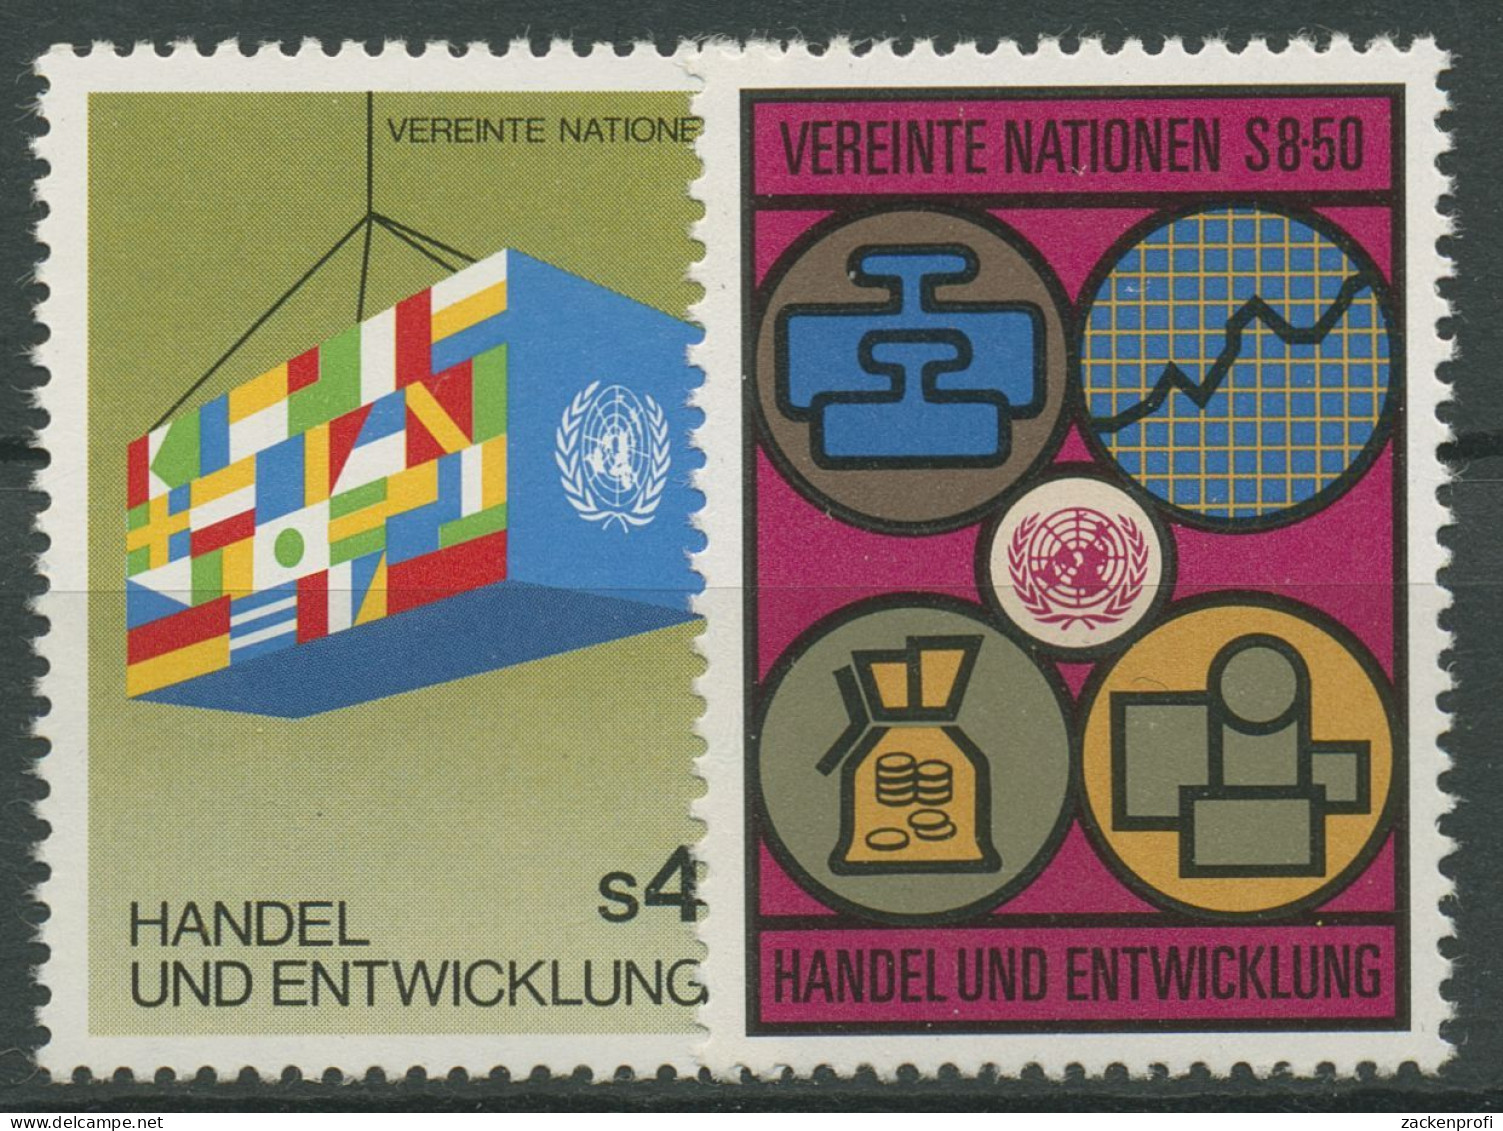 UNO Wien 1983 Handel Und Entwicklung UNCTAD 34/35 Postfrisch - Nuovi